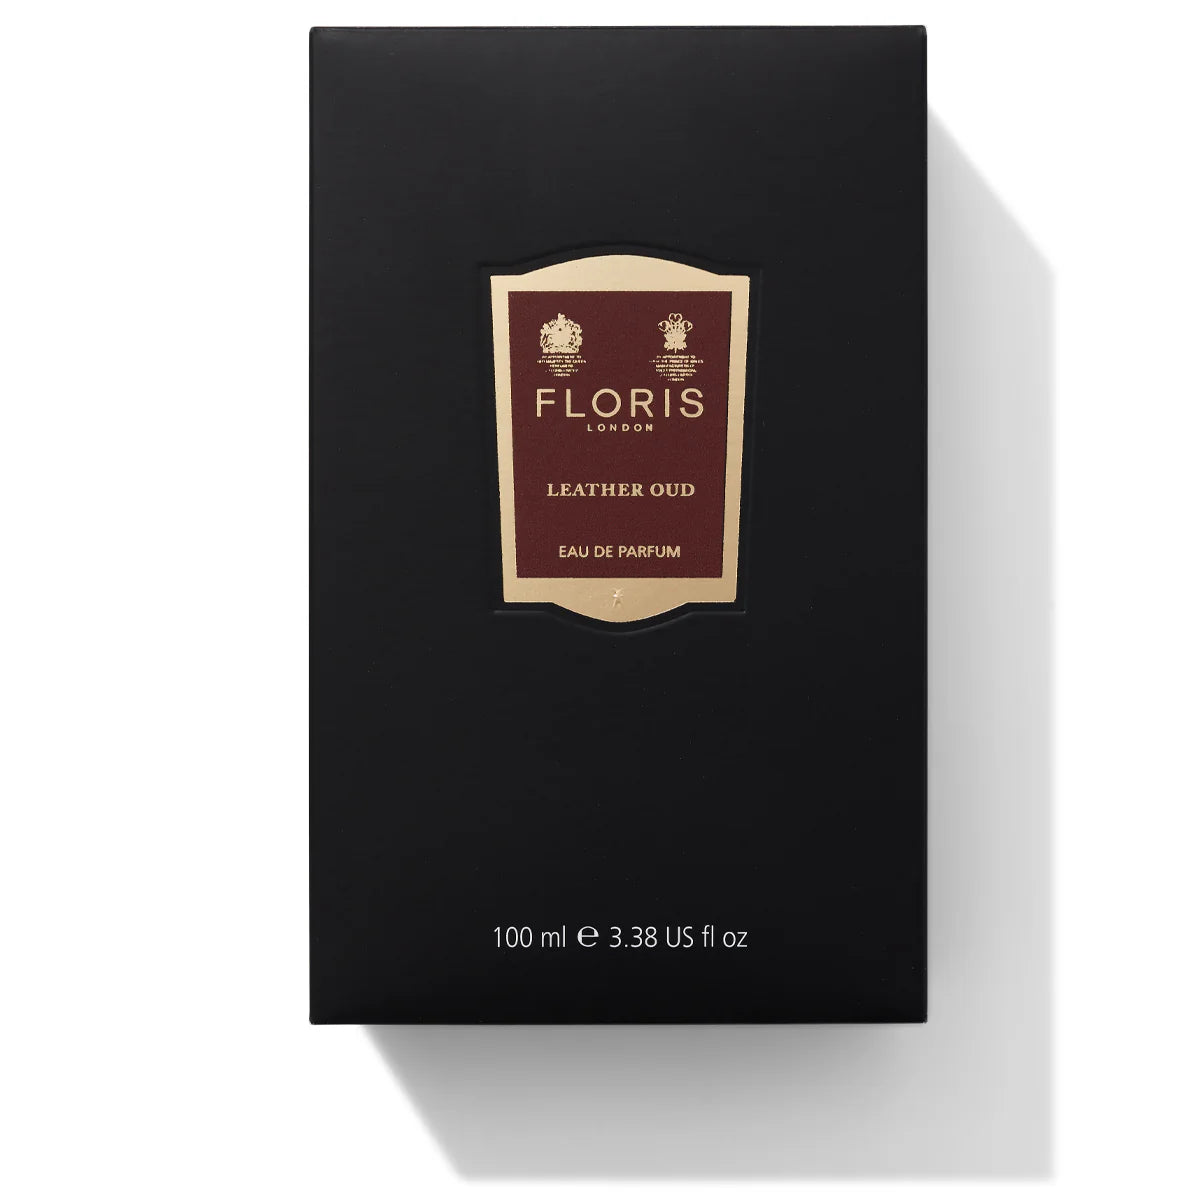 Floris Leather Oud Eau de Parfum